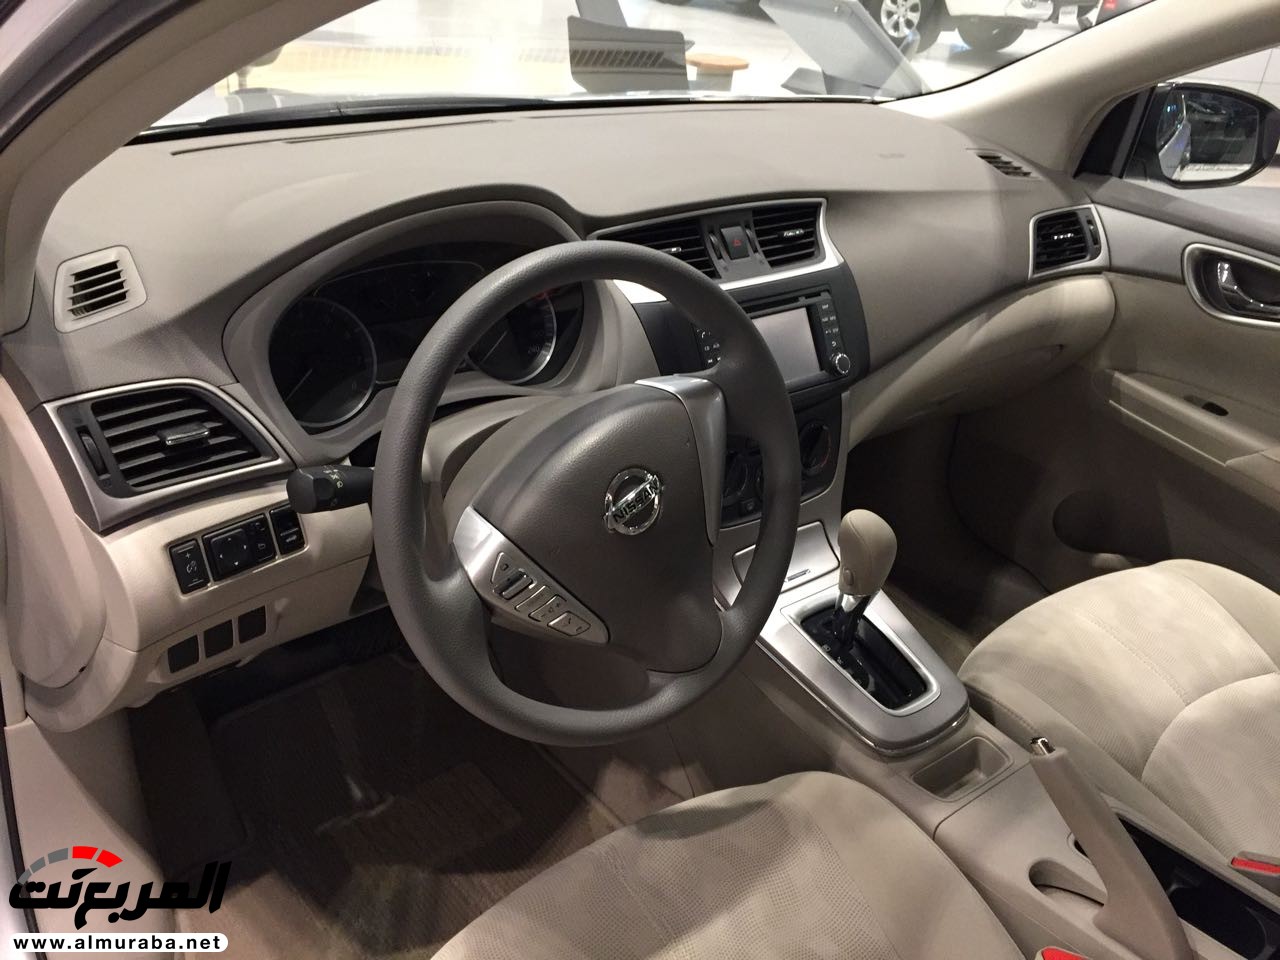 نيسان سنترا 2018 في السعودية لدى العيسى وبترومين + الاسعار والمواصفات لجميع الفئات Nissan Sentra 5